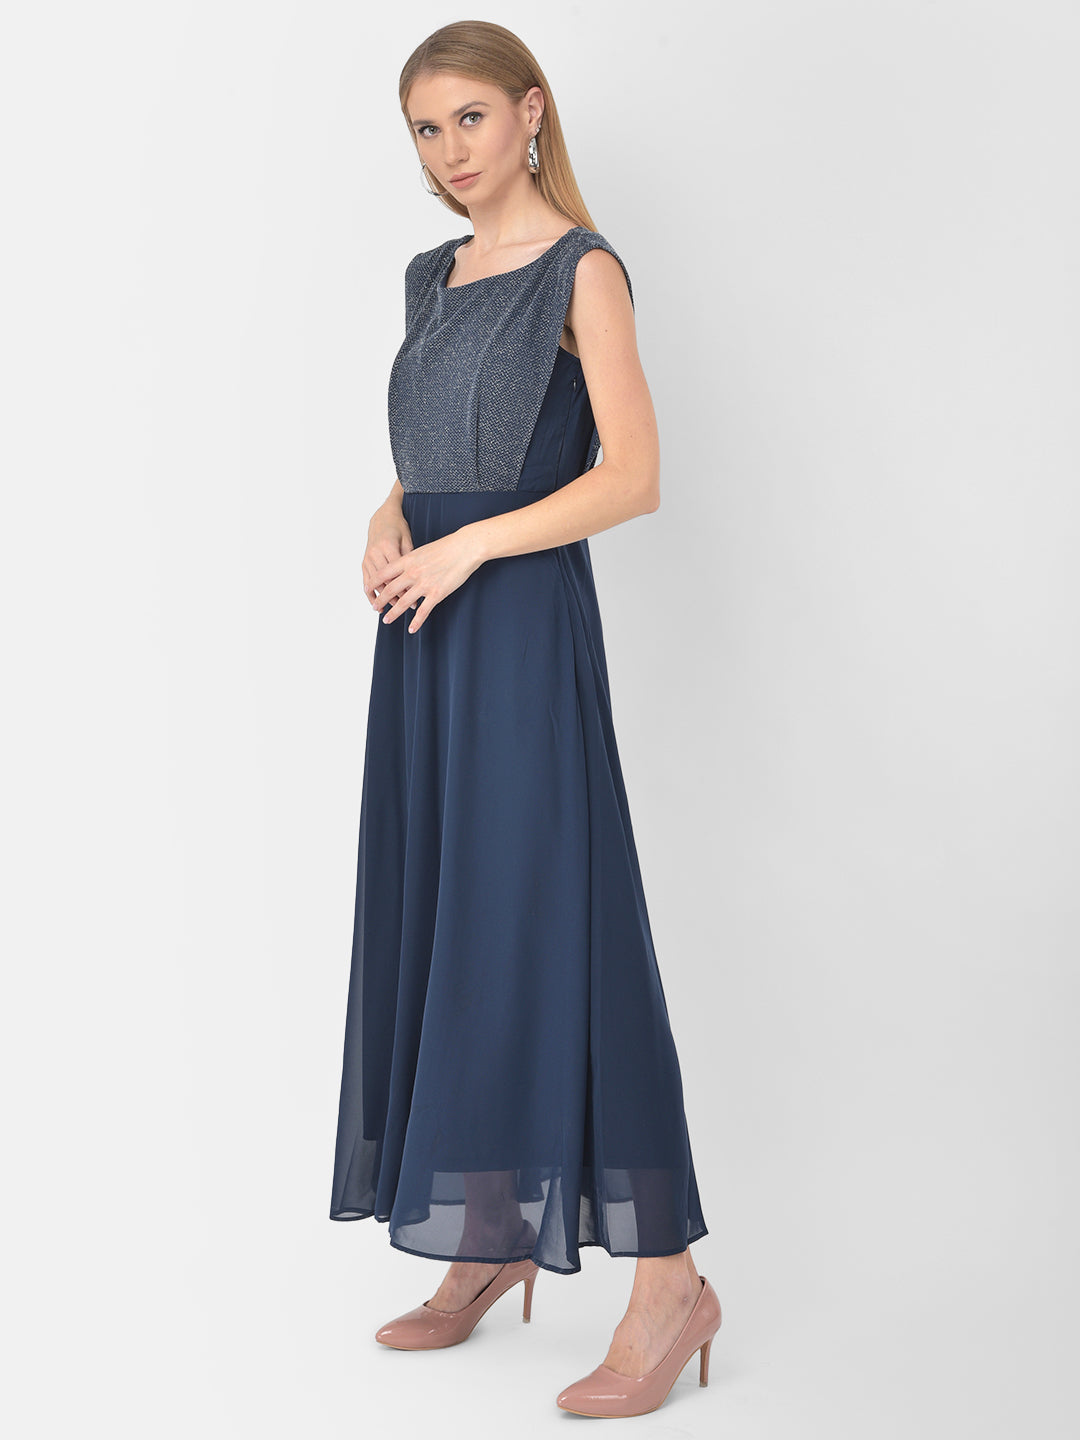 Blue Cap Sleeve 2 Fir 1 Maxi Dress